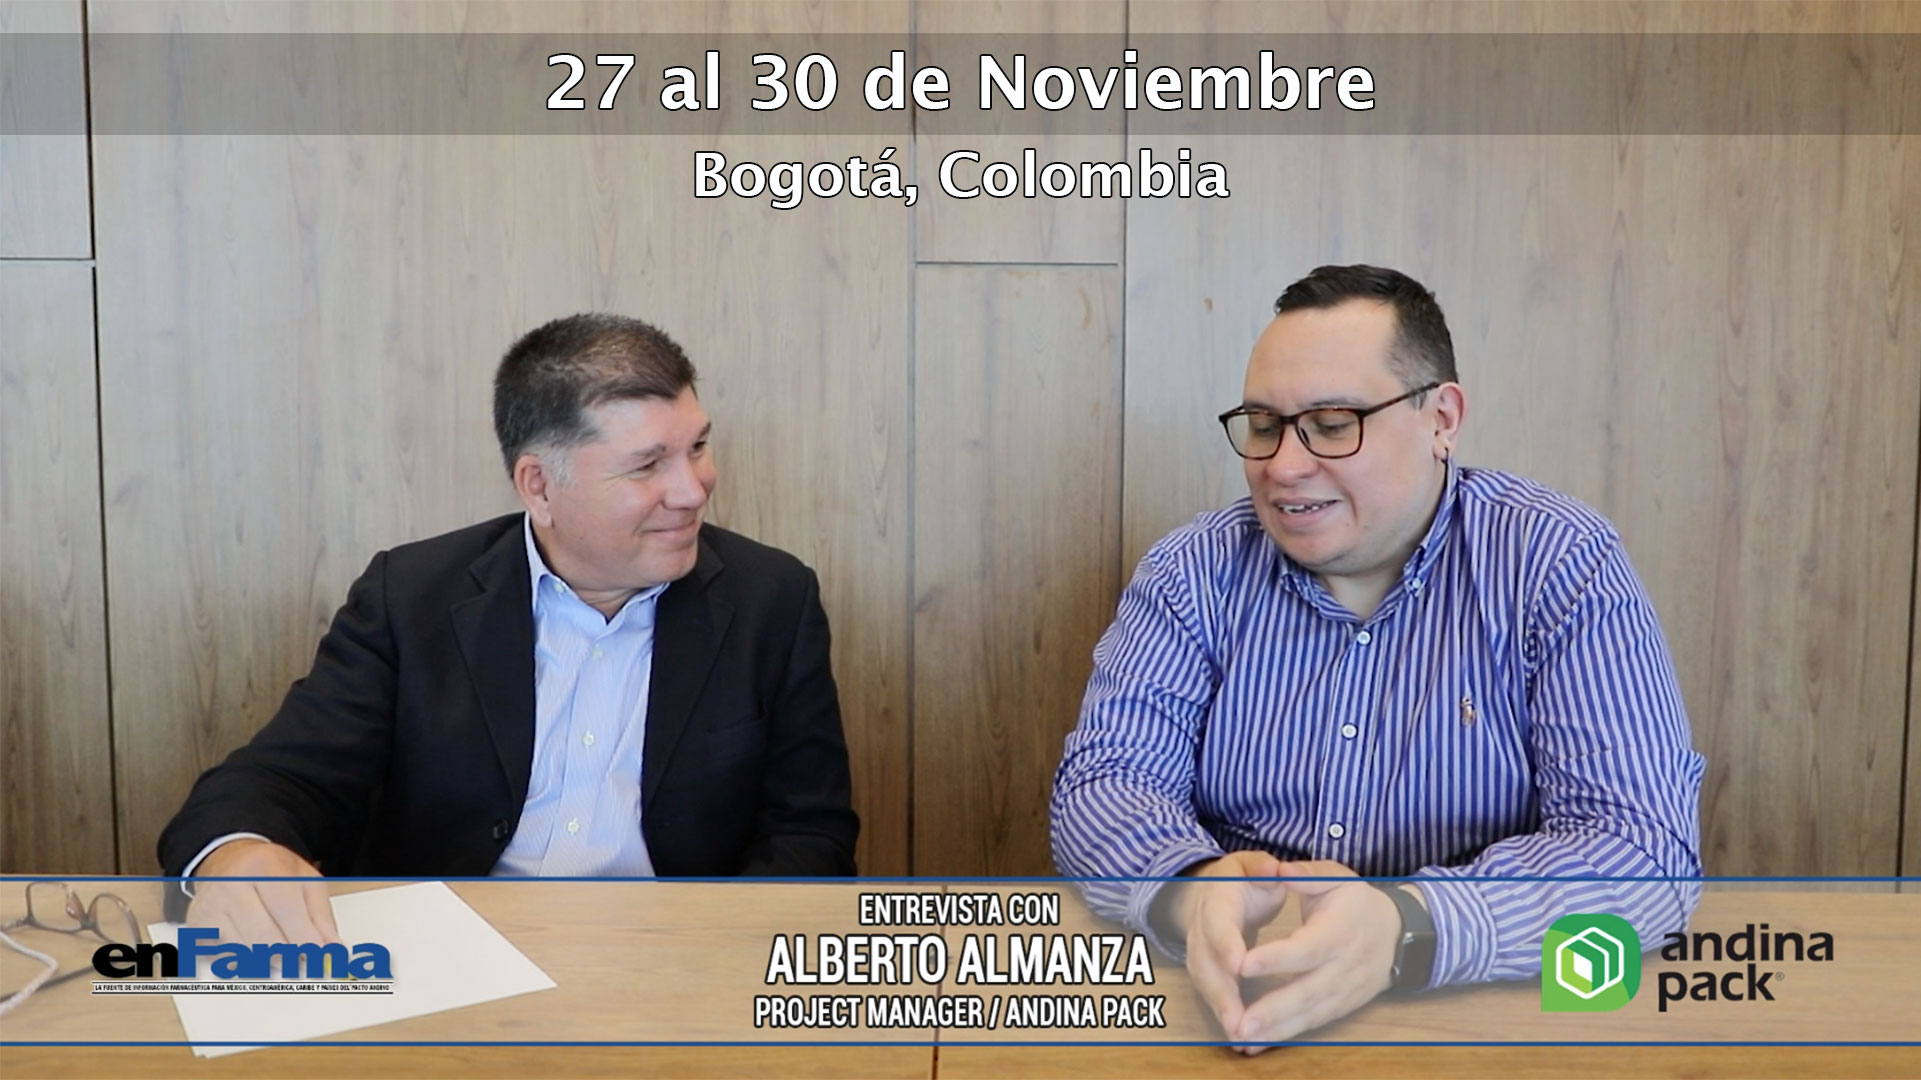 Andina Pack con lo mejor de procesamiento y empaque de las industrias de la vida, conversamos con Alberto Almanza sobre este importante evento